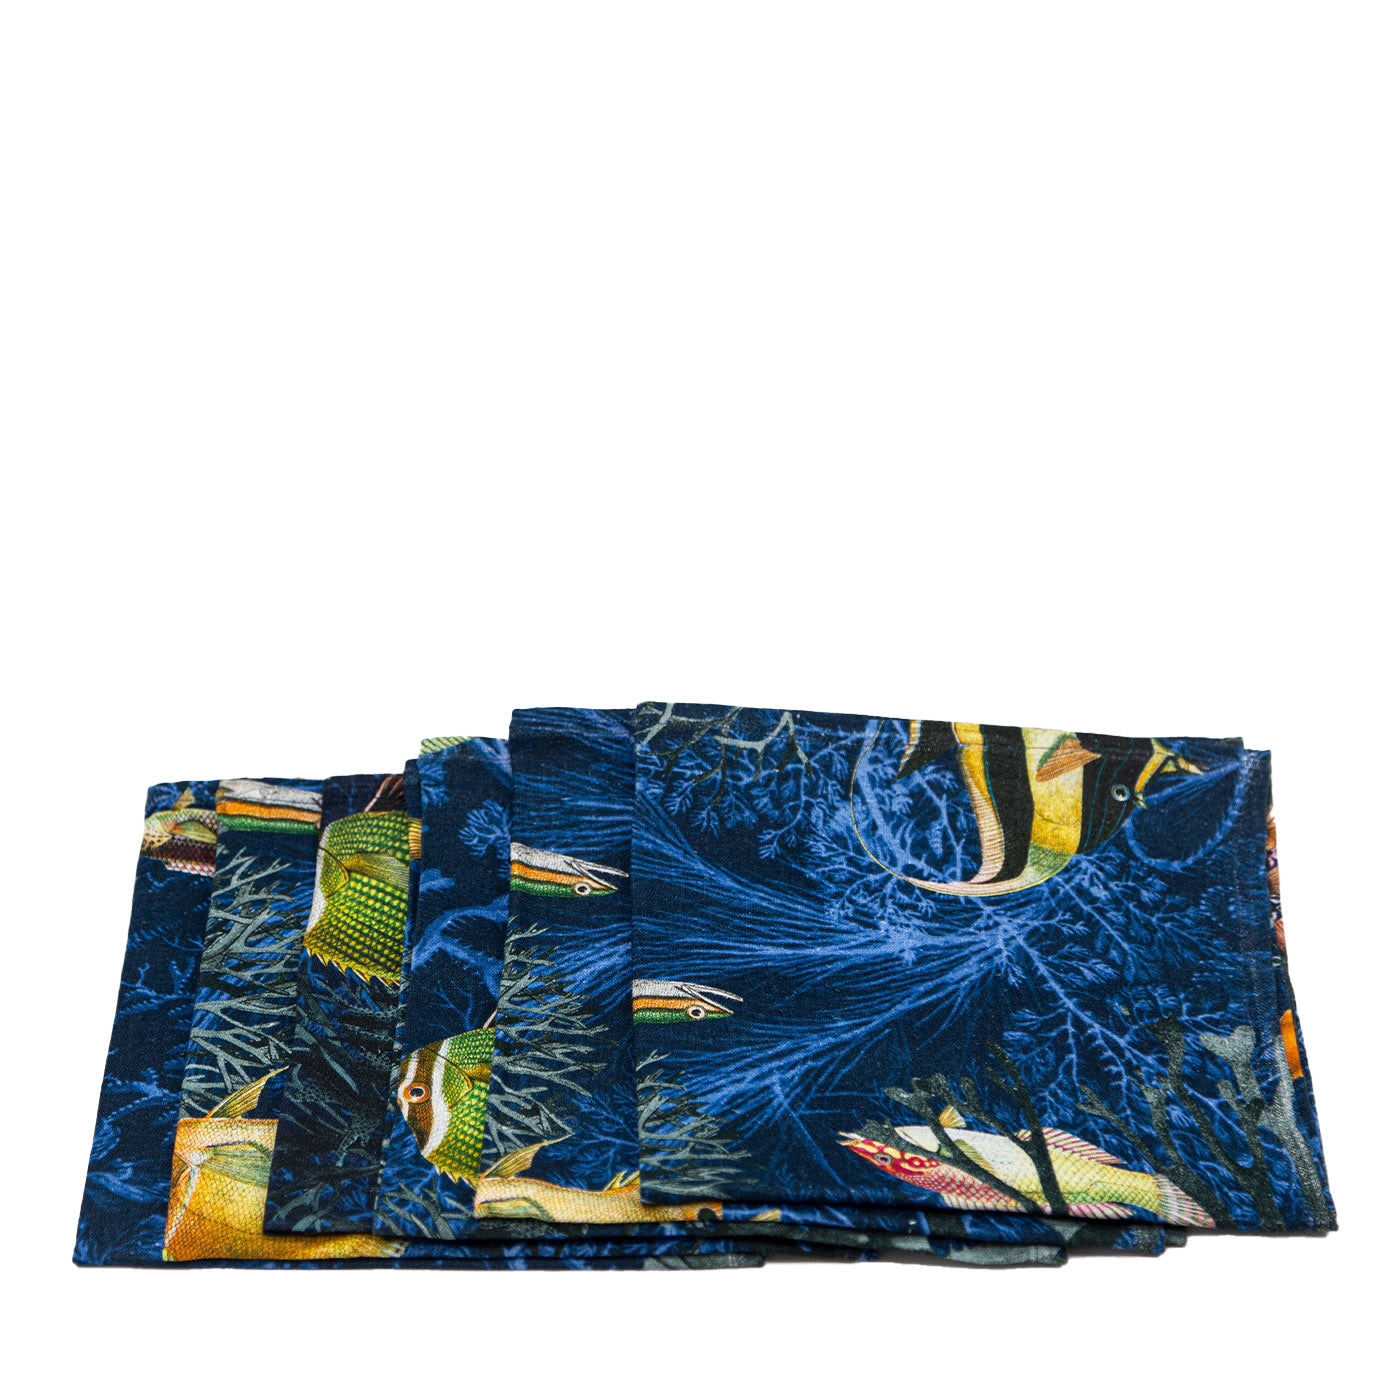 Amami 6er Set Leinenservietten mit Marinedekoration - Hauptansicht